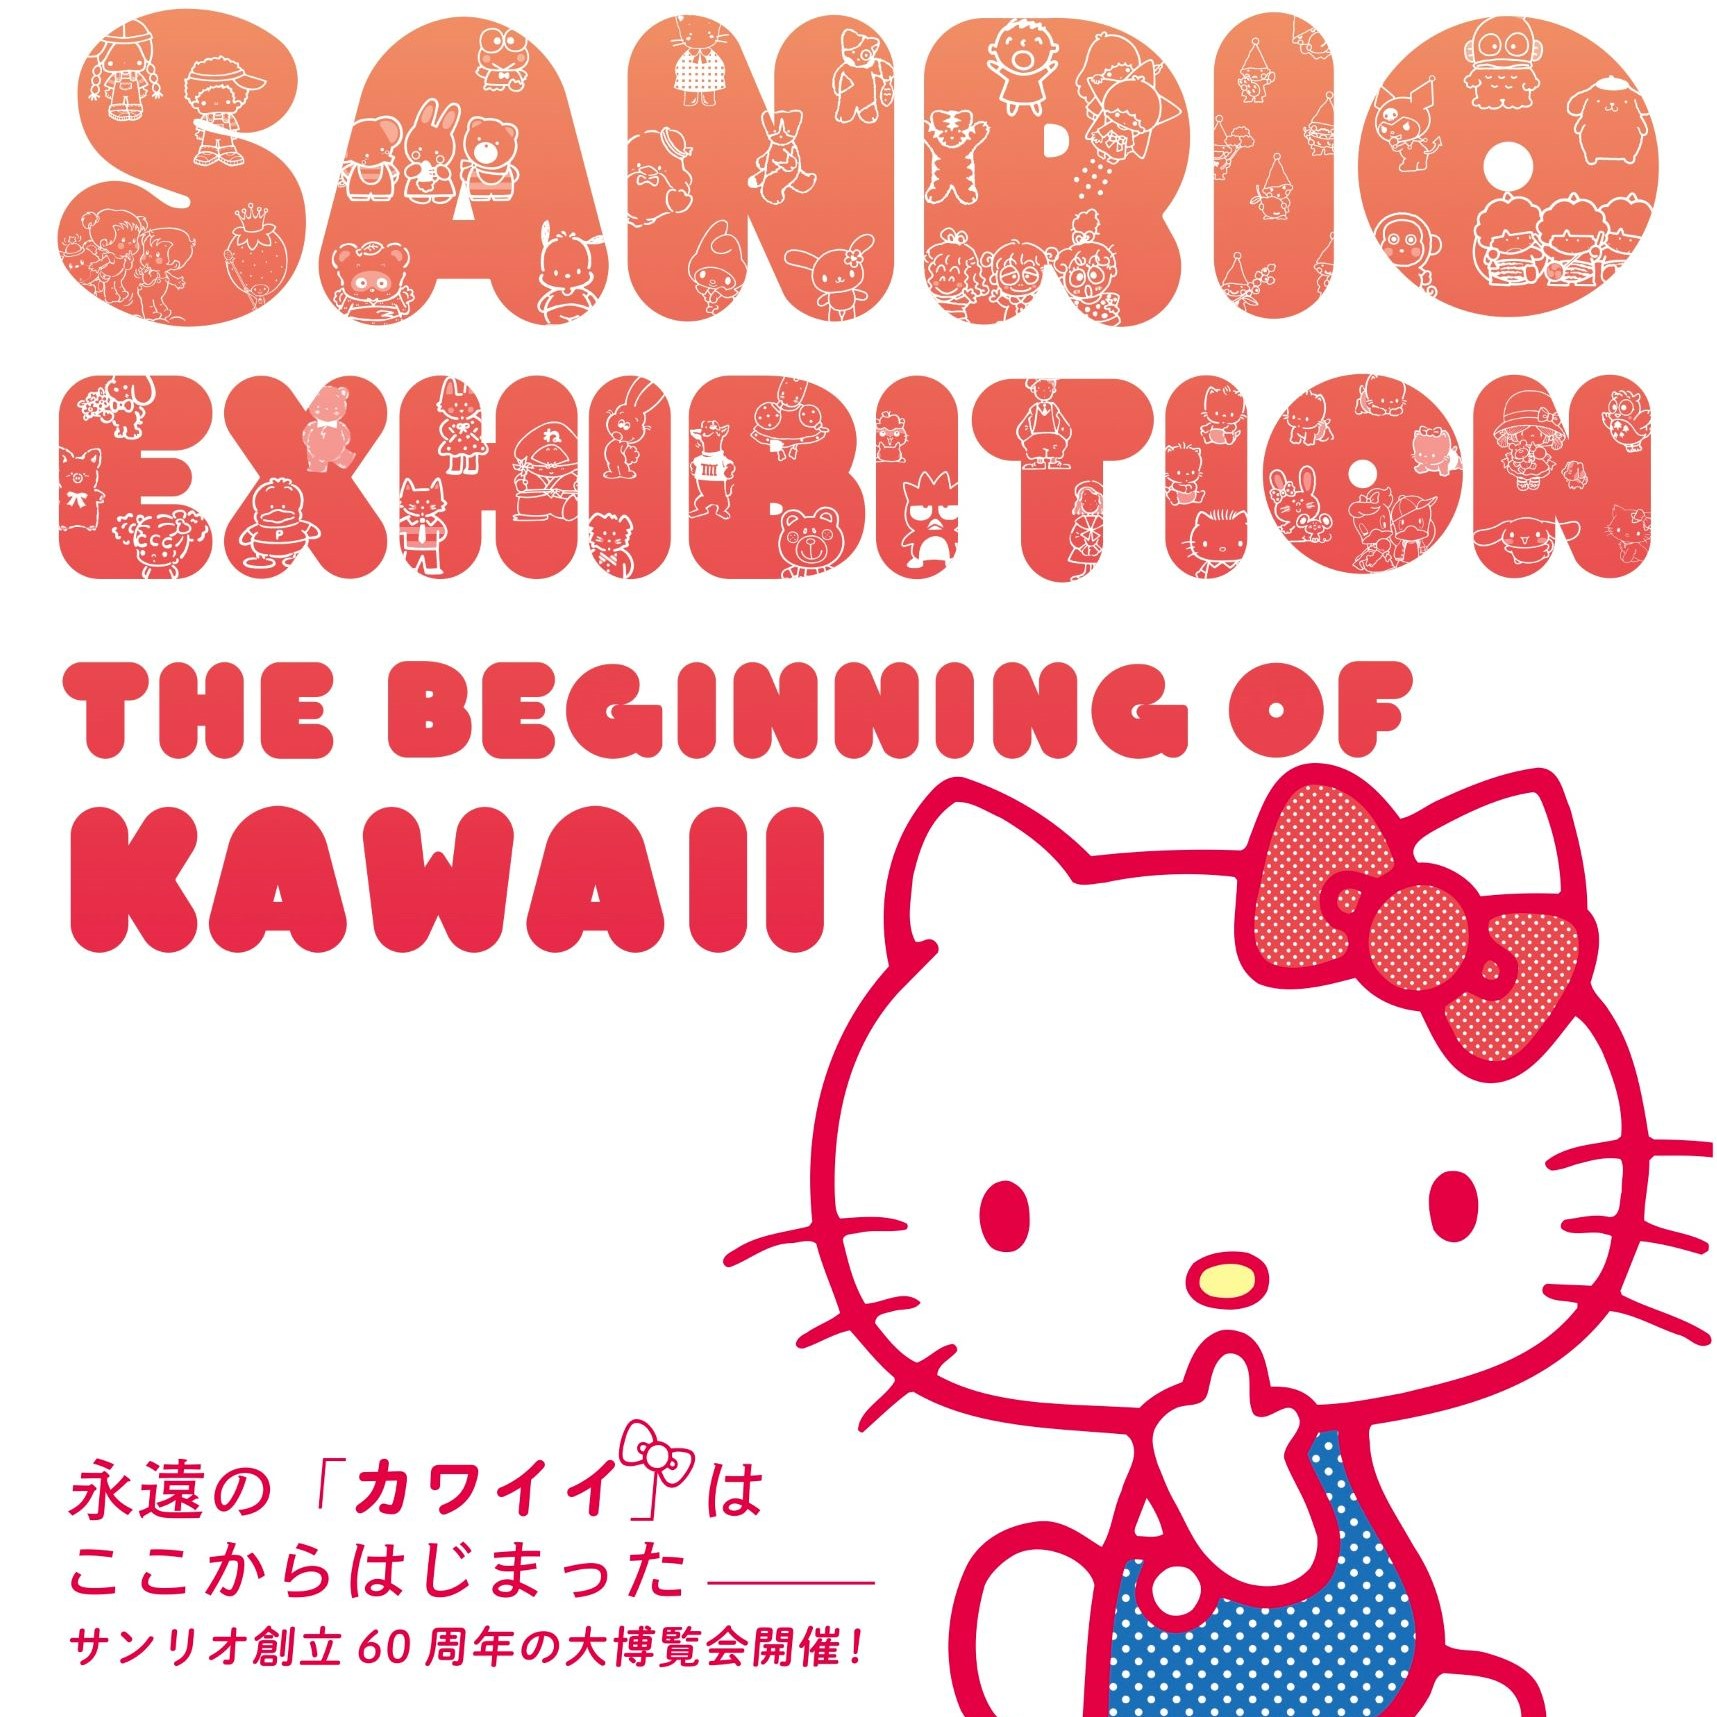 福岡市博物館 特別展「サンリオ展 ニッポンのカワイイ文化６０年史」との相互割引企画